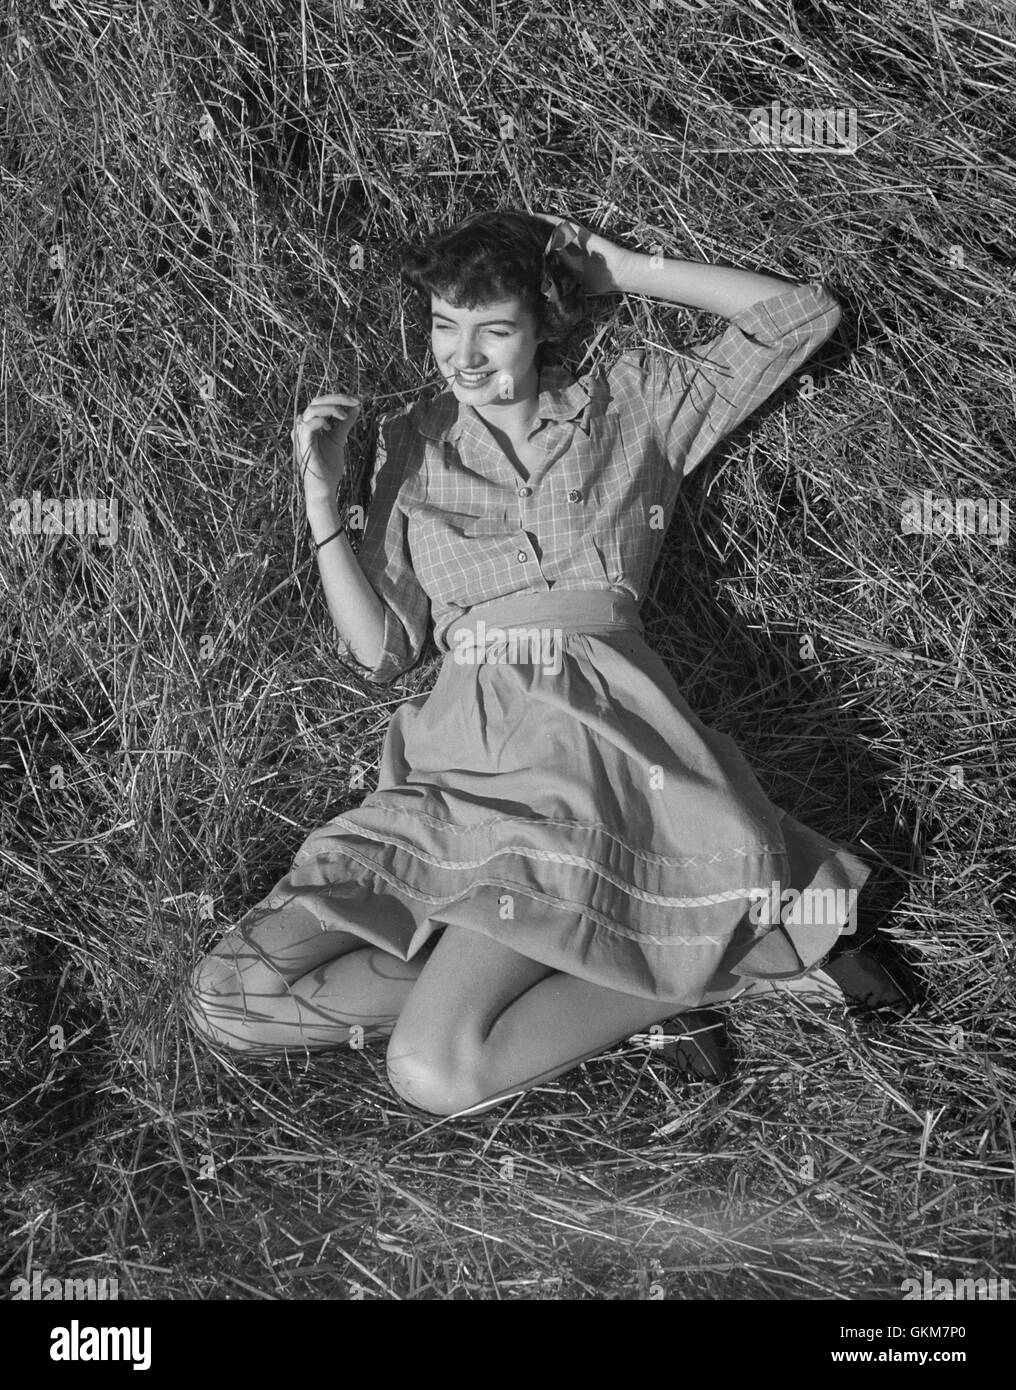 Marcia Legere, également connu sous le nom de Marcia Legere Binns Binns acteur Edward après son mariage. Cette photo a été prise quelque temps de récolte de 1946. Banque D'Images